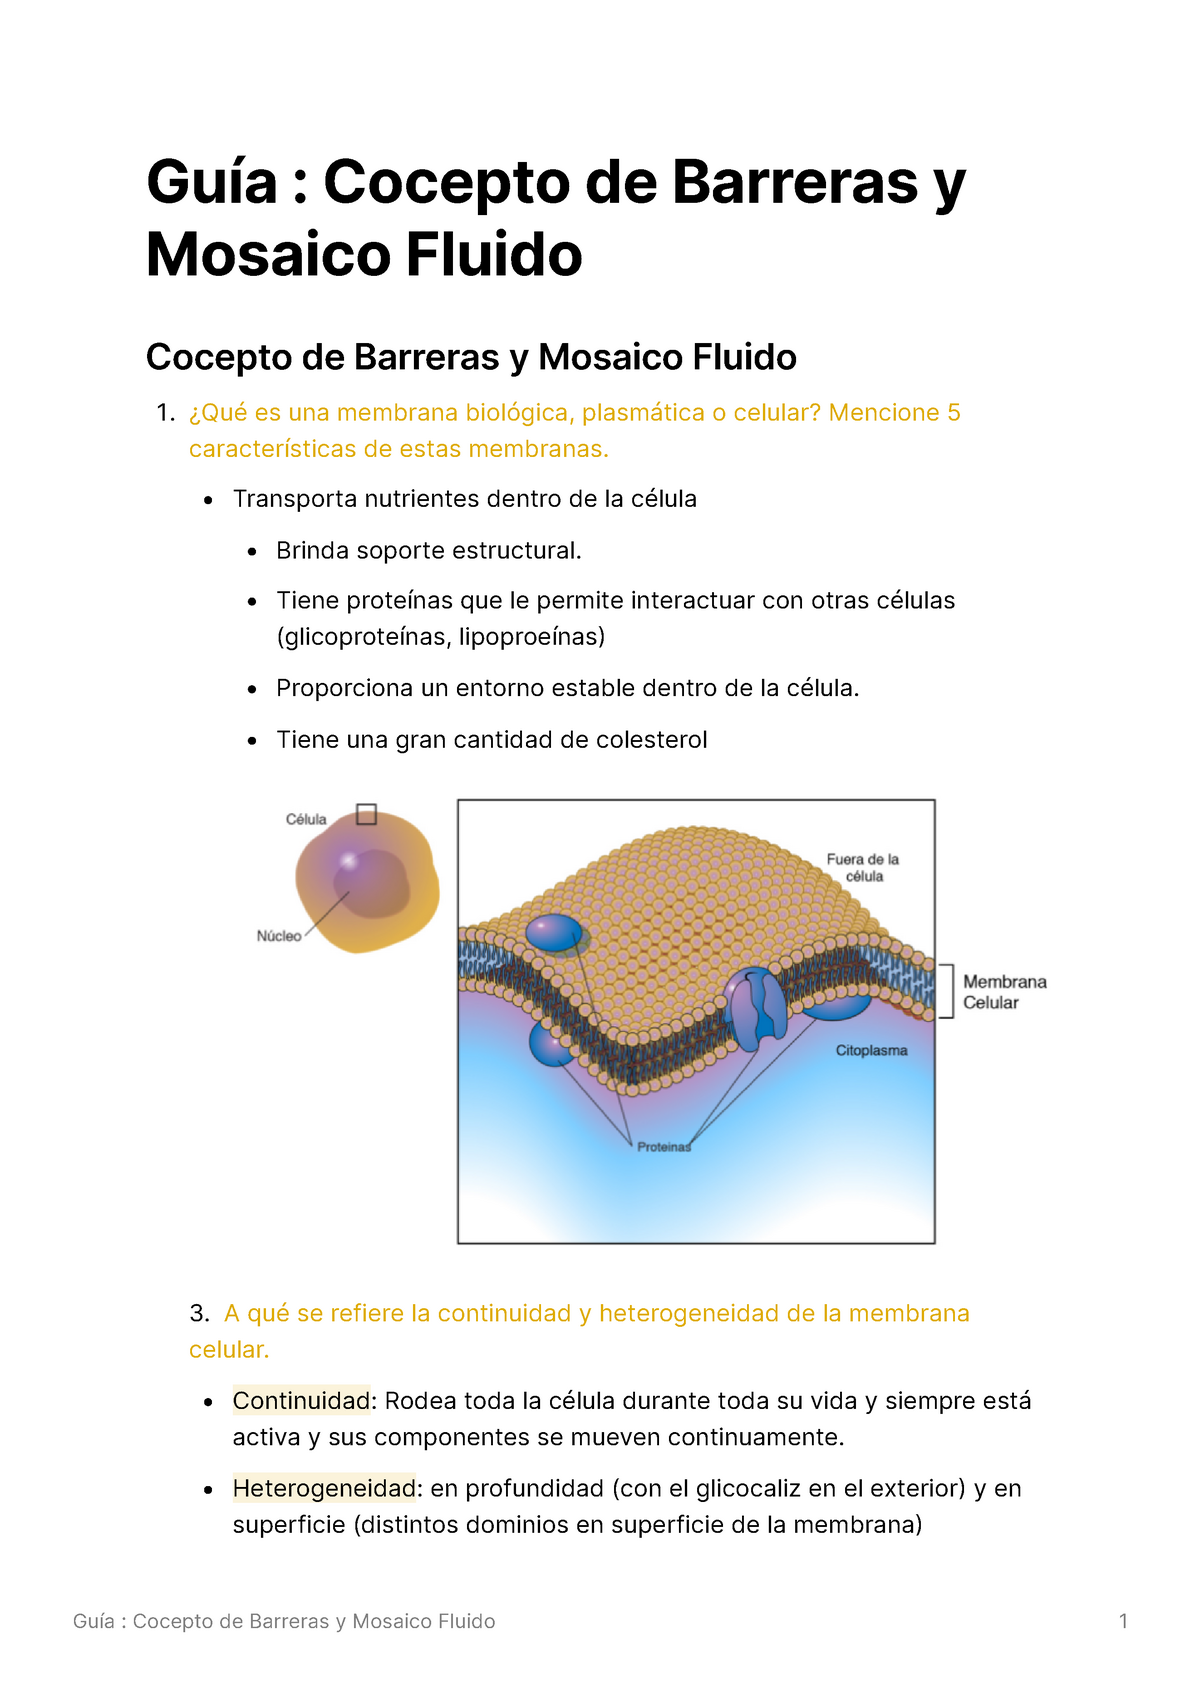 Concepto de barreras y mosaico fluido - Transporta nutrientes dentro de la  célula Brinda soporte - Studocu